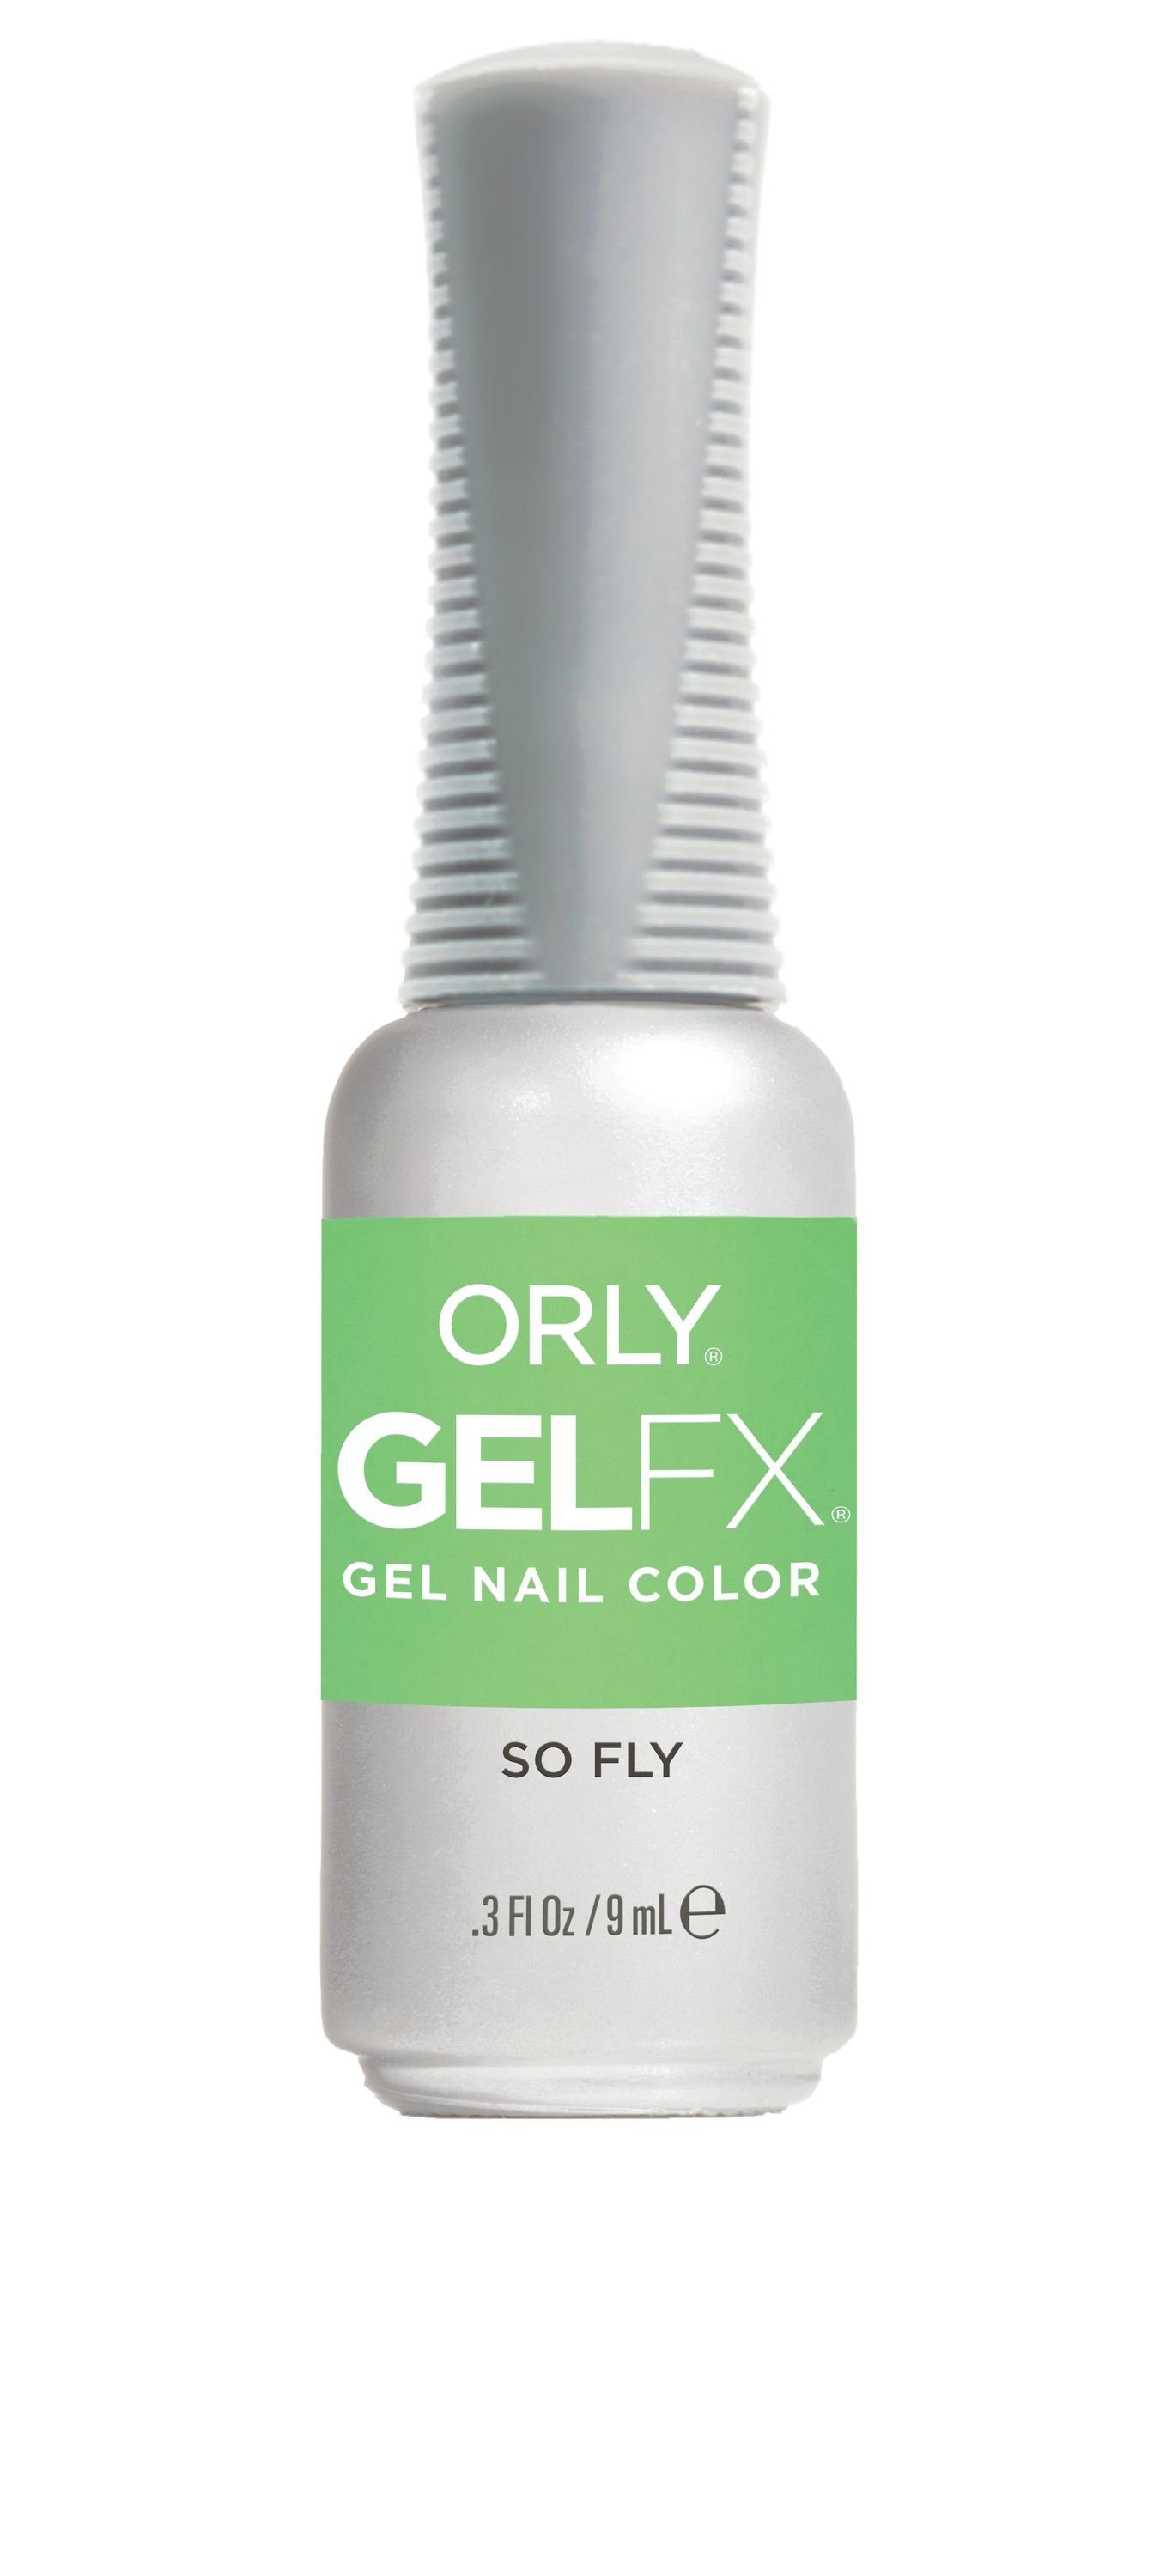 ORLY UV-Nagellack GEL FX So Fly, 9ML